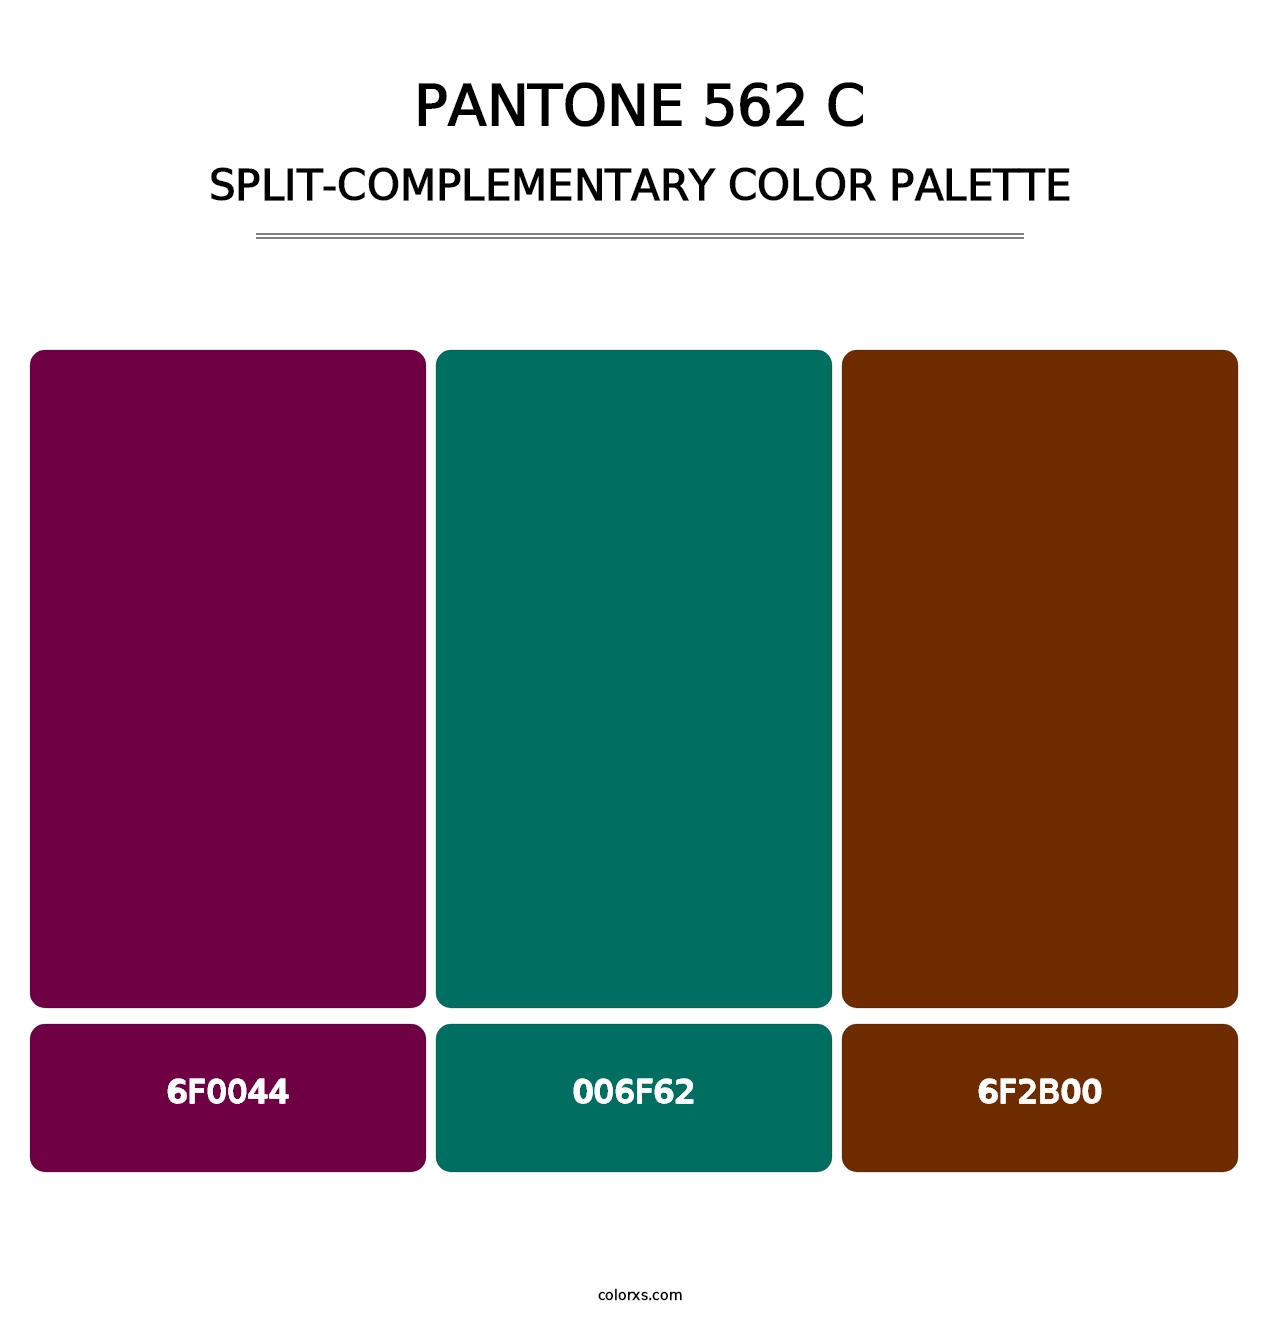 PANTONE 562 C - Split-Complementary Color Palette